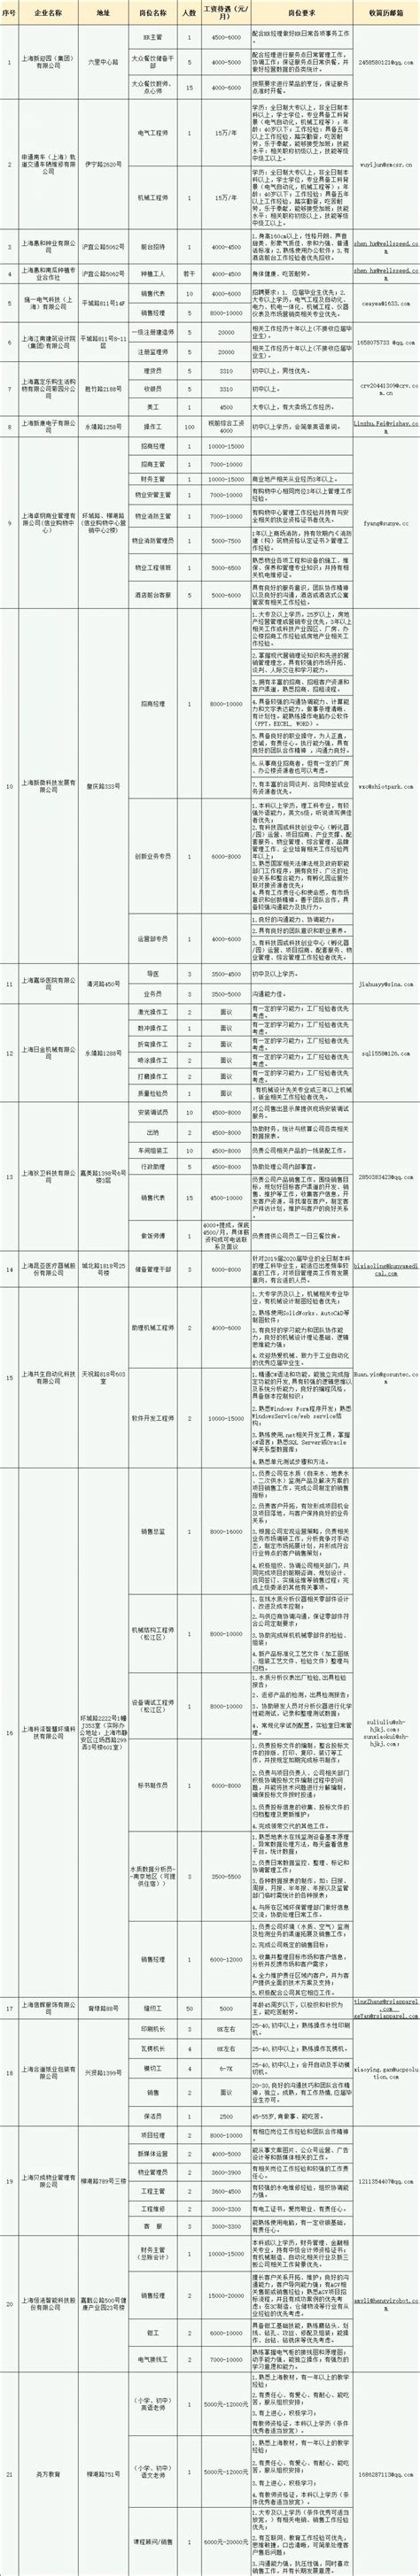 上海嘉定紧急用工需求发布第15期 招聘330余人- 上海本地宝